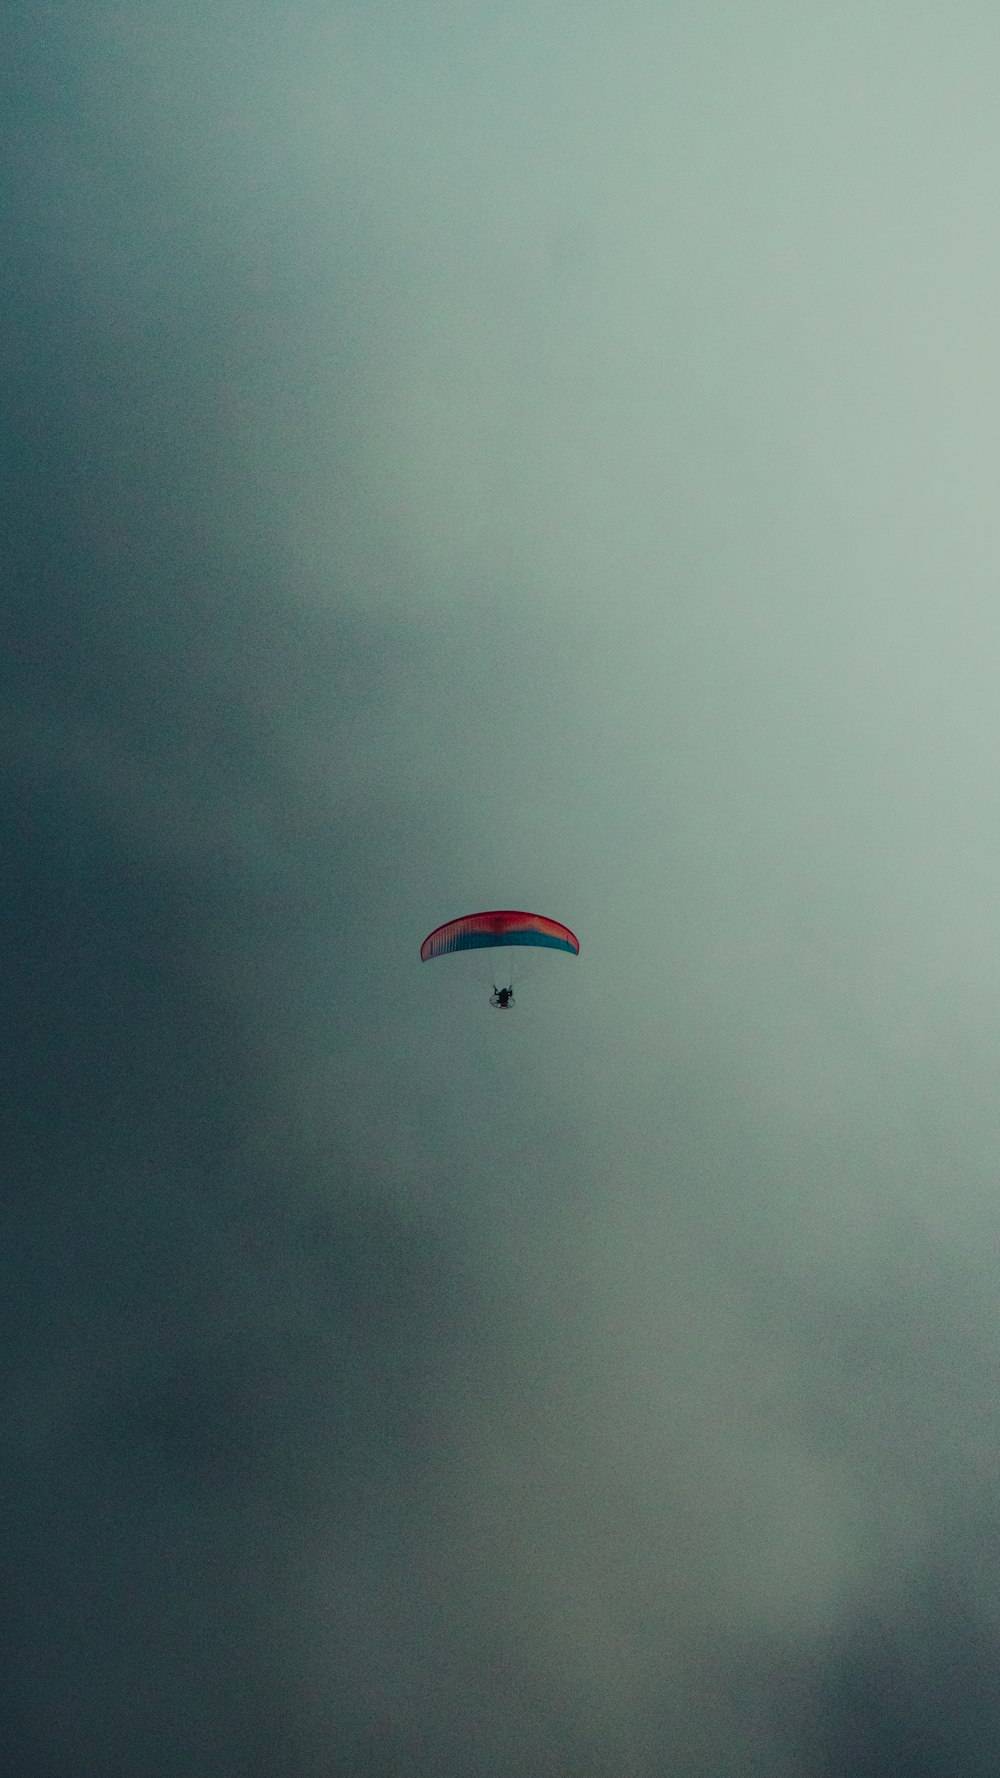 a parasailer is flying through a cloudy sky